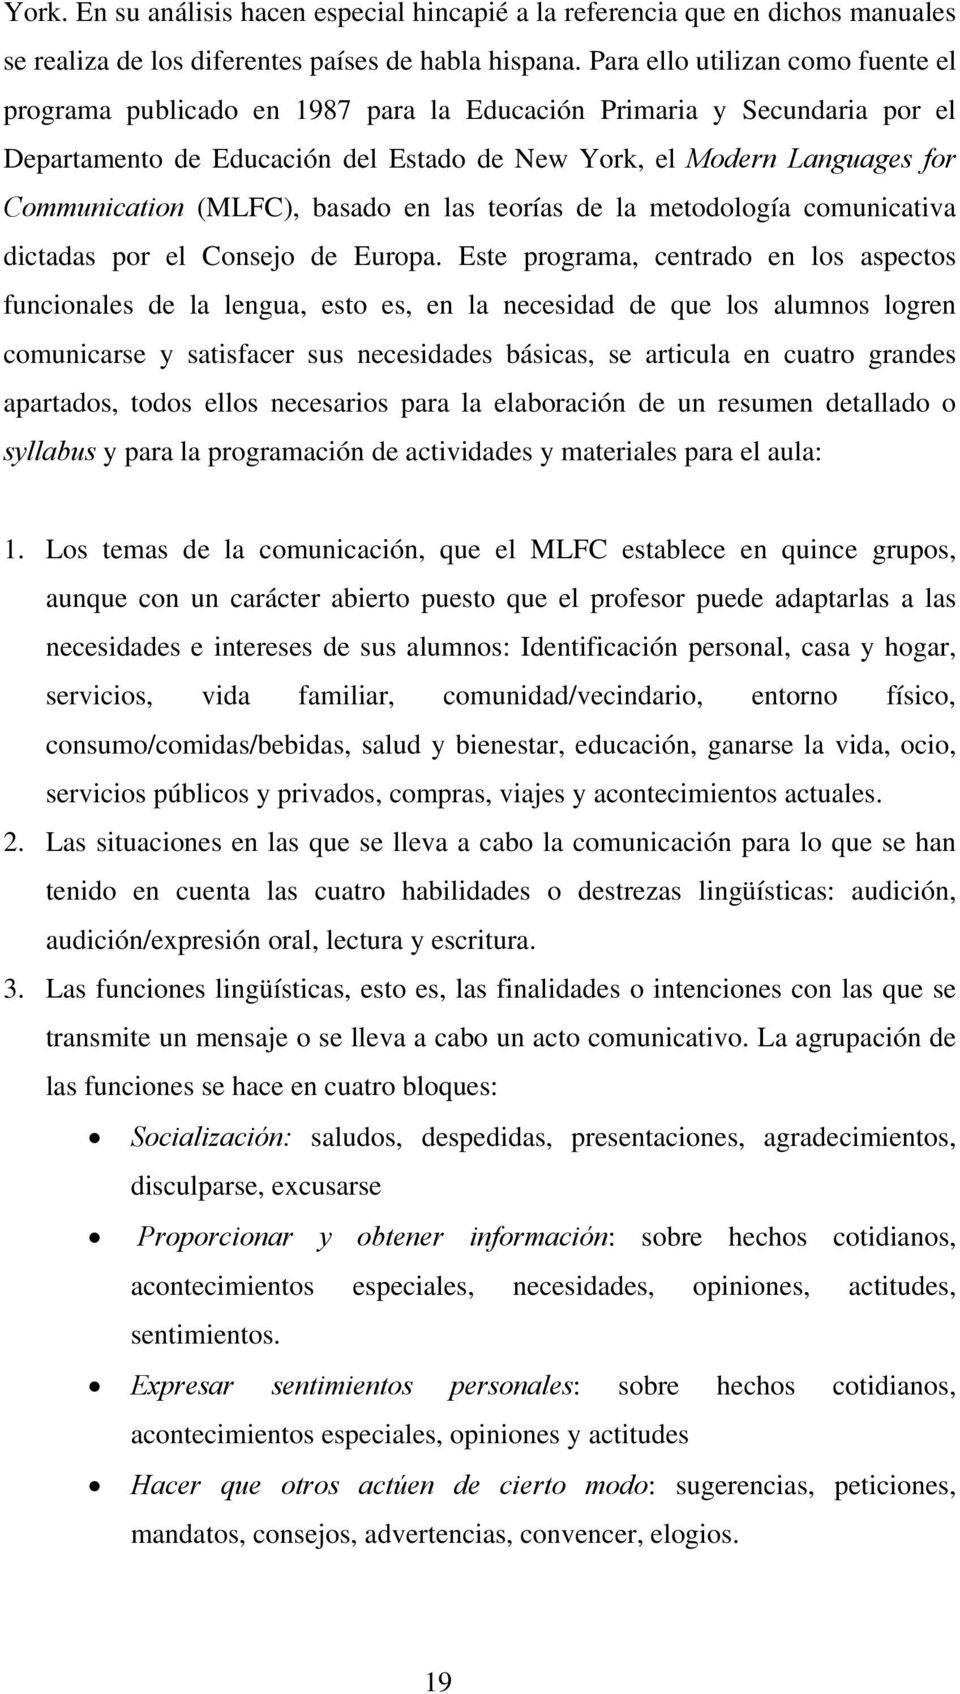 (MLFC), basado en las teorías de la metodología comunicativa dictadas por el Consejo de Europa.